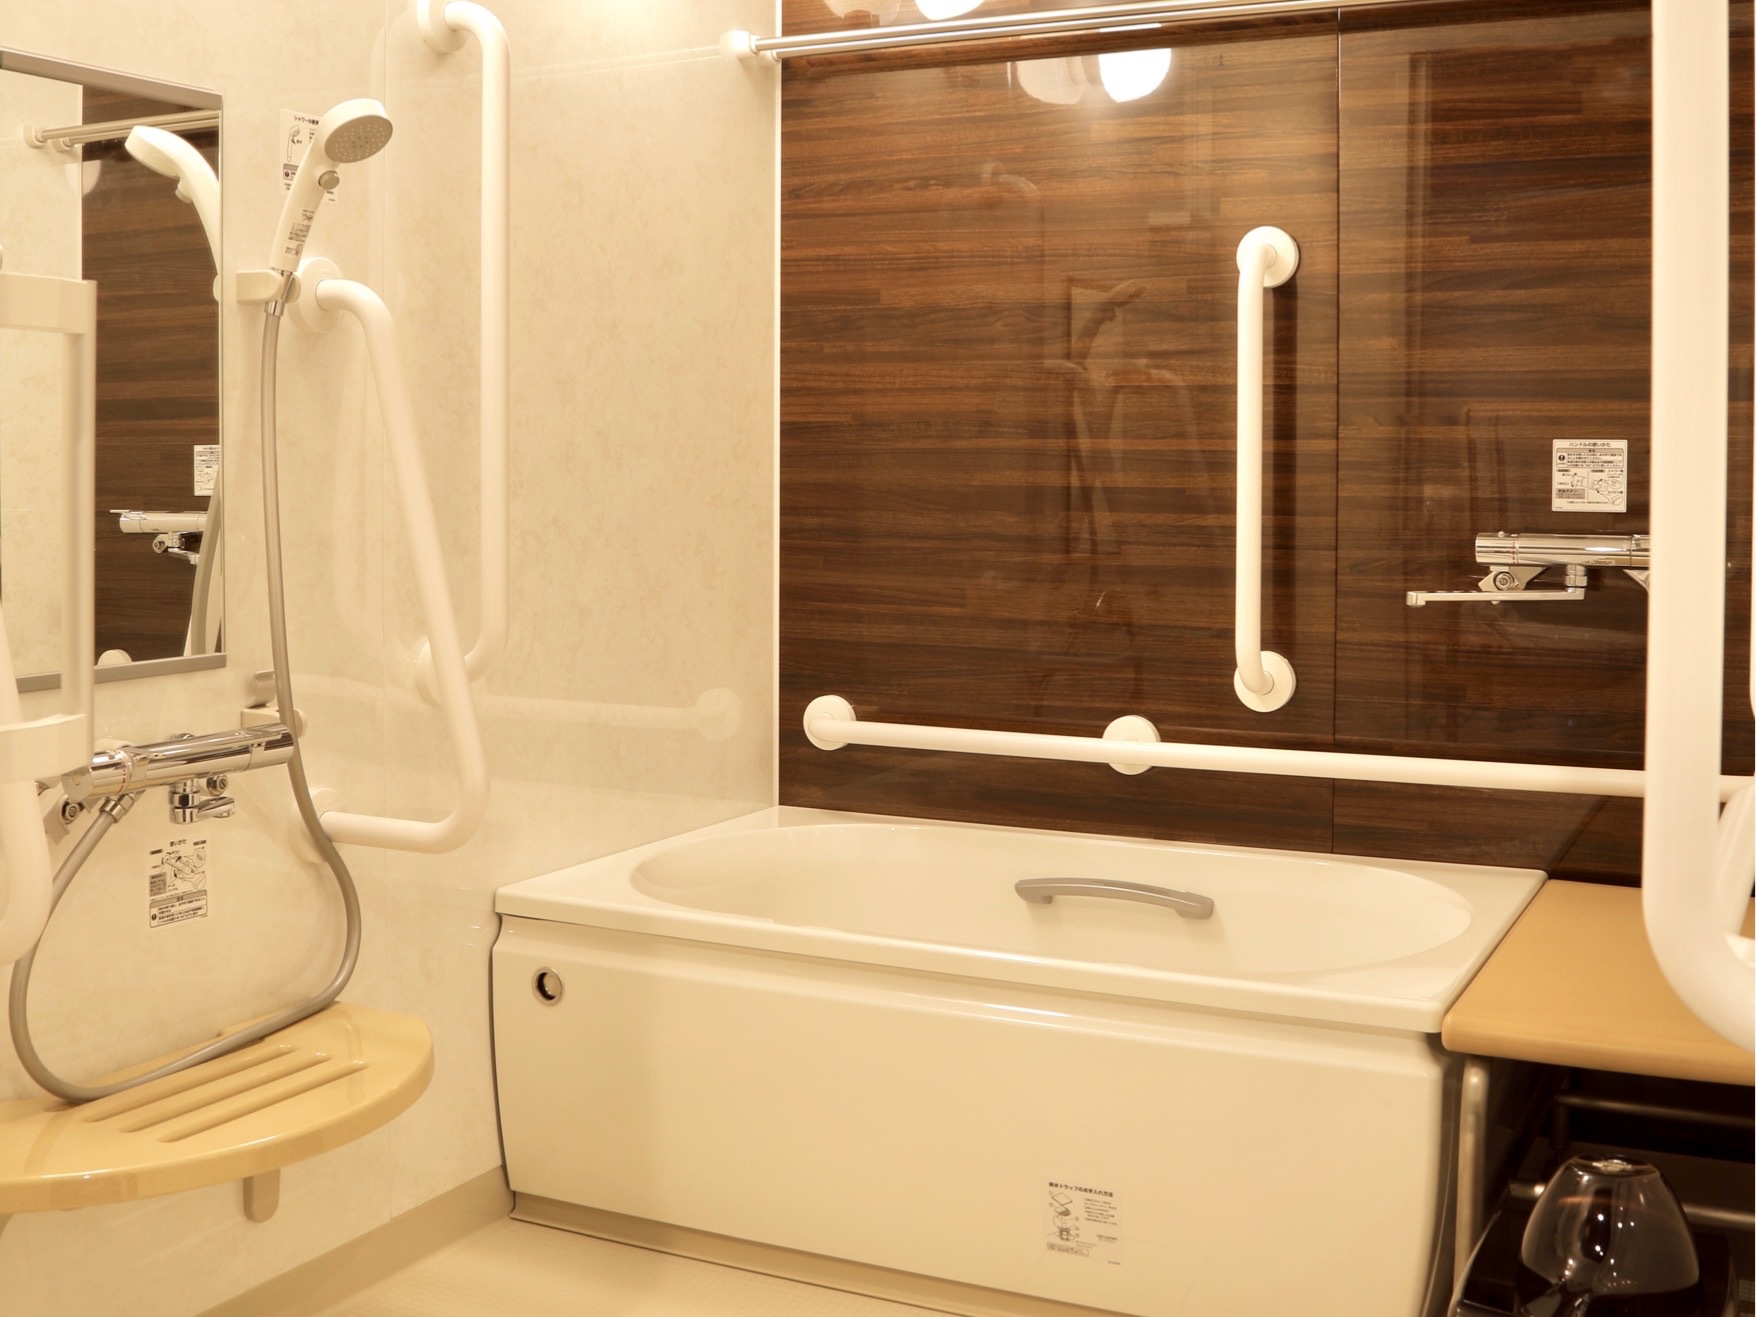 1ベッドルーム（バリアフリー対応） 洗面・トイレ・浴室など、水回りは広めの造りとなっております。